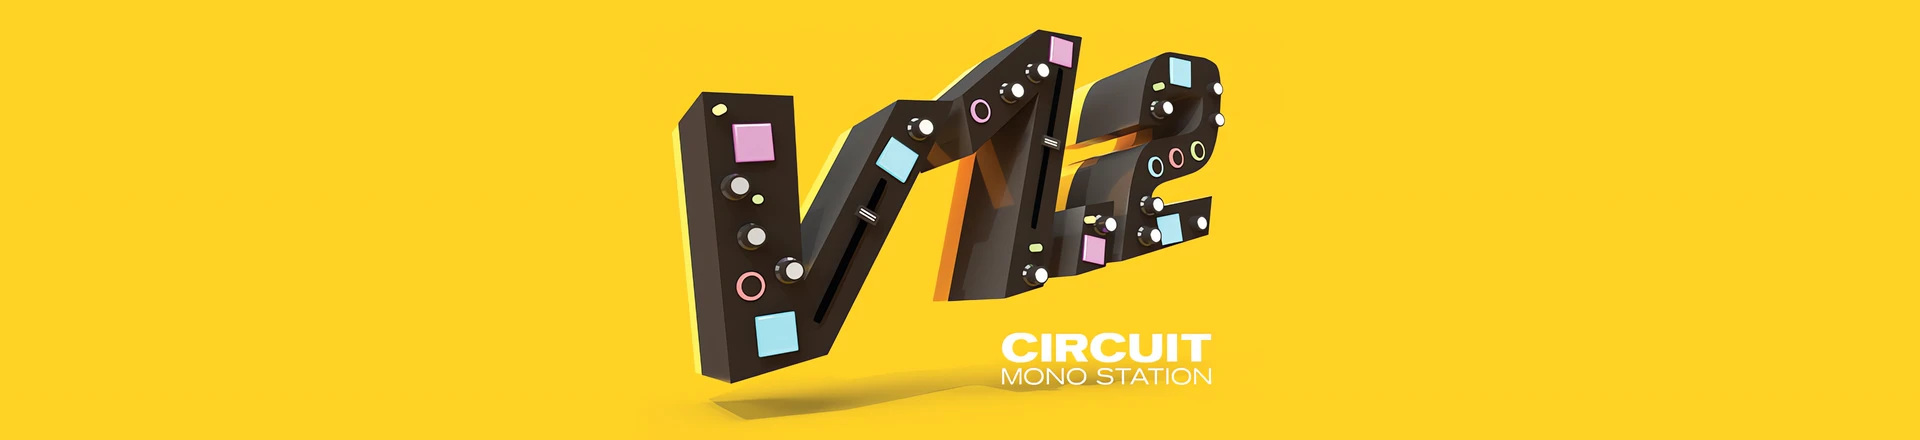 Nowy firmware 1.2 dla Circuit Mono Station